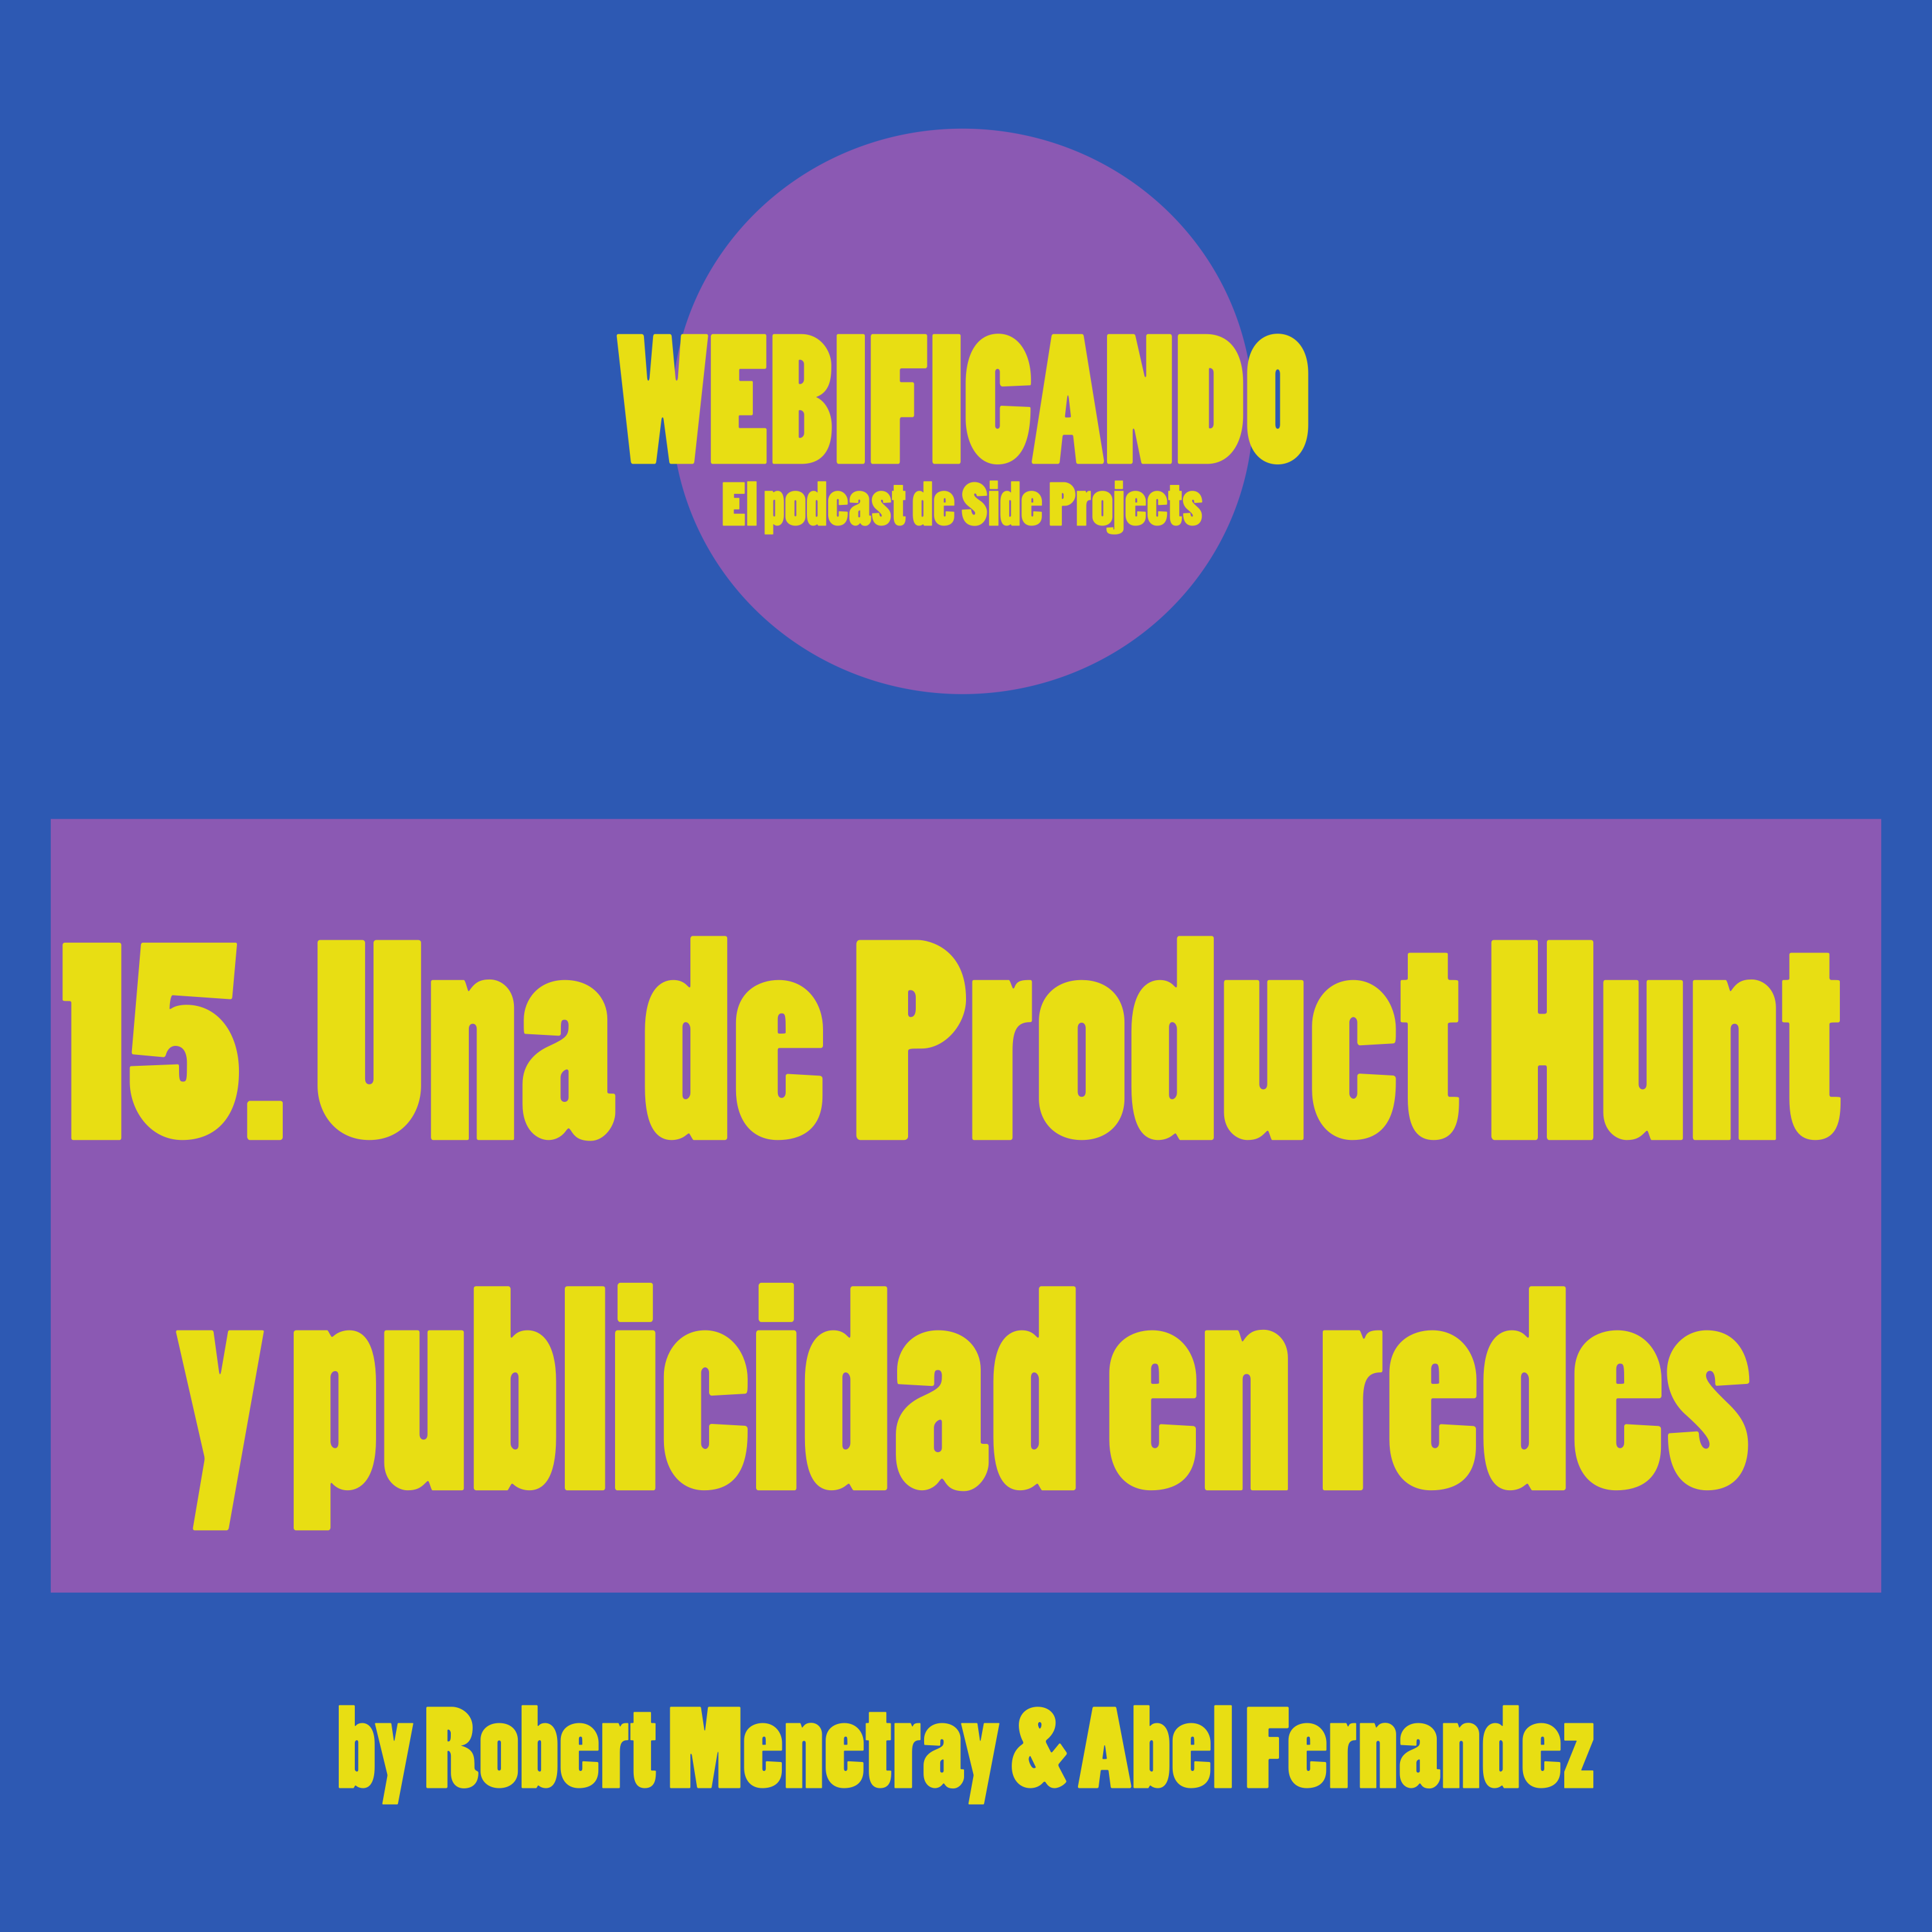 15. Una de Product Hunt y publicidad en redes